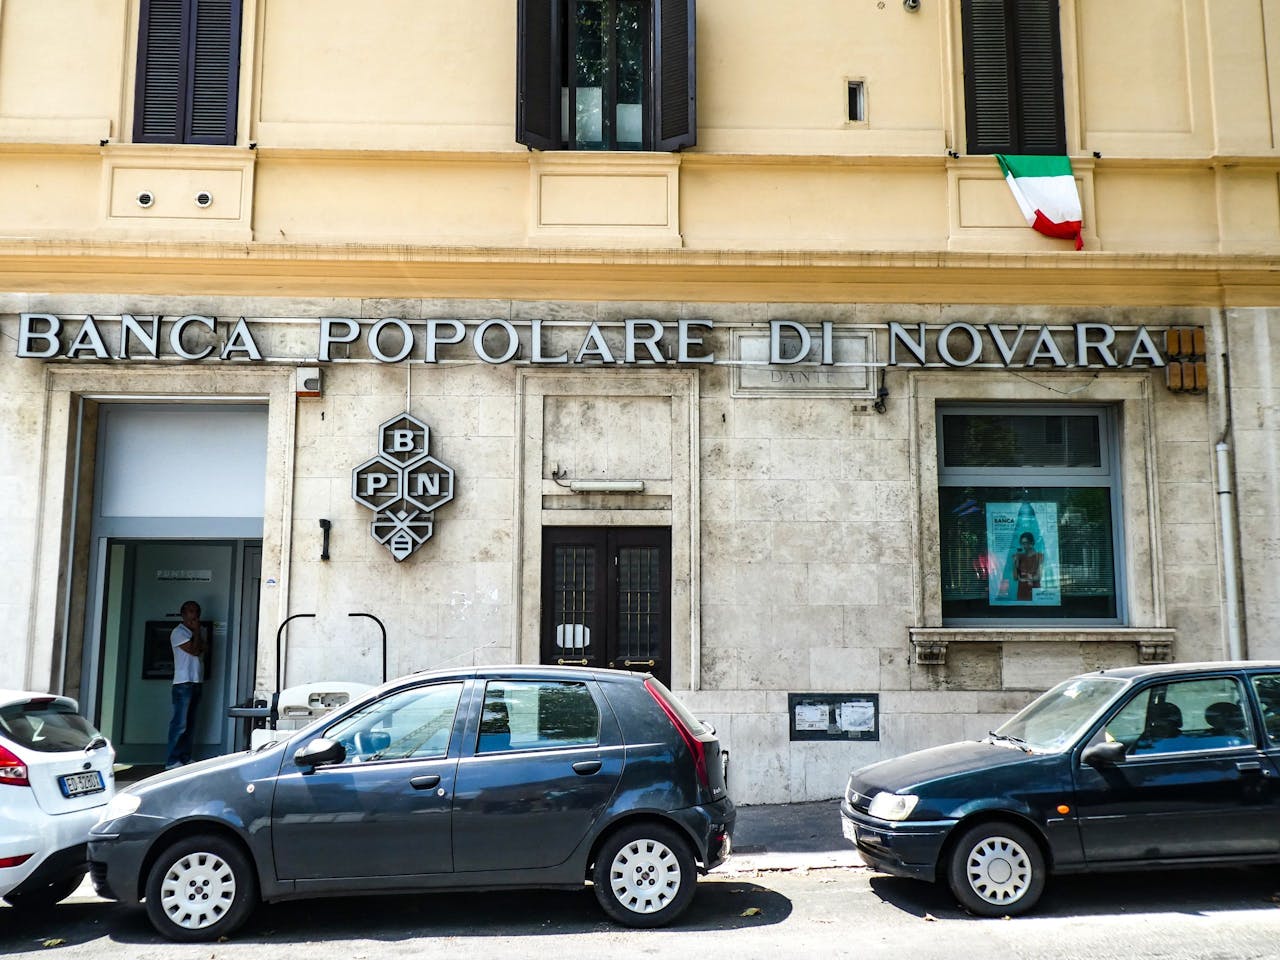 Het coöperatieve Banca Popolare di Novara werd een paar jaar geleden ingelijfd door Banco Popolare